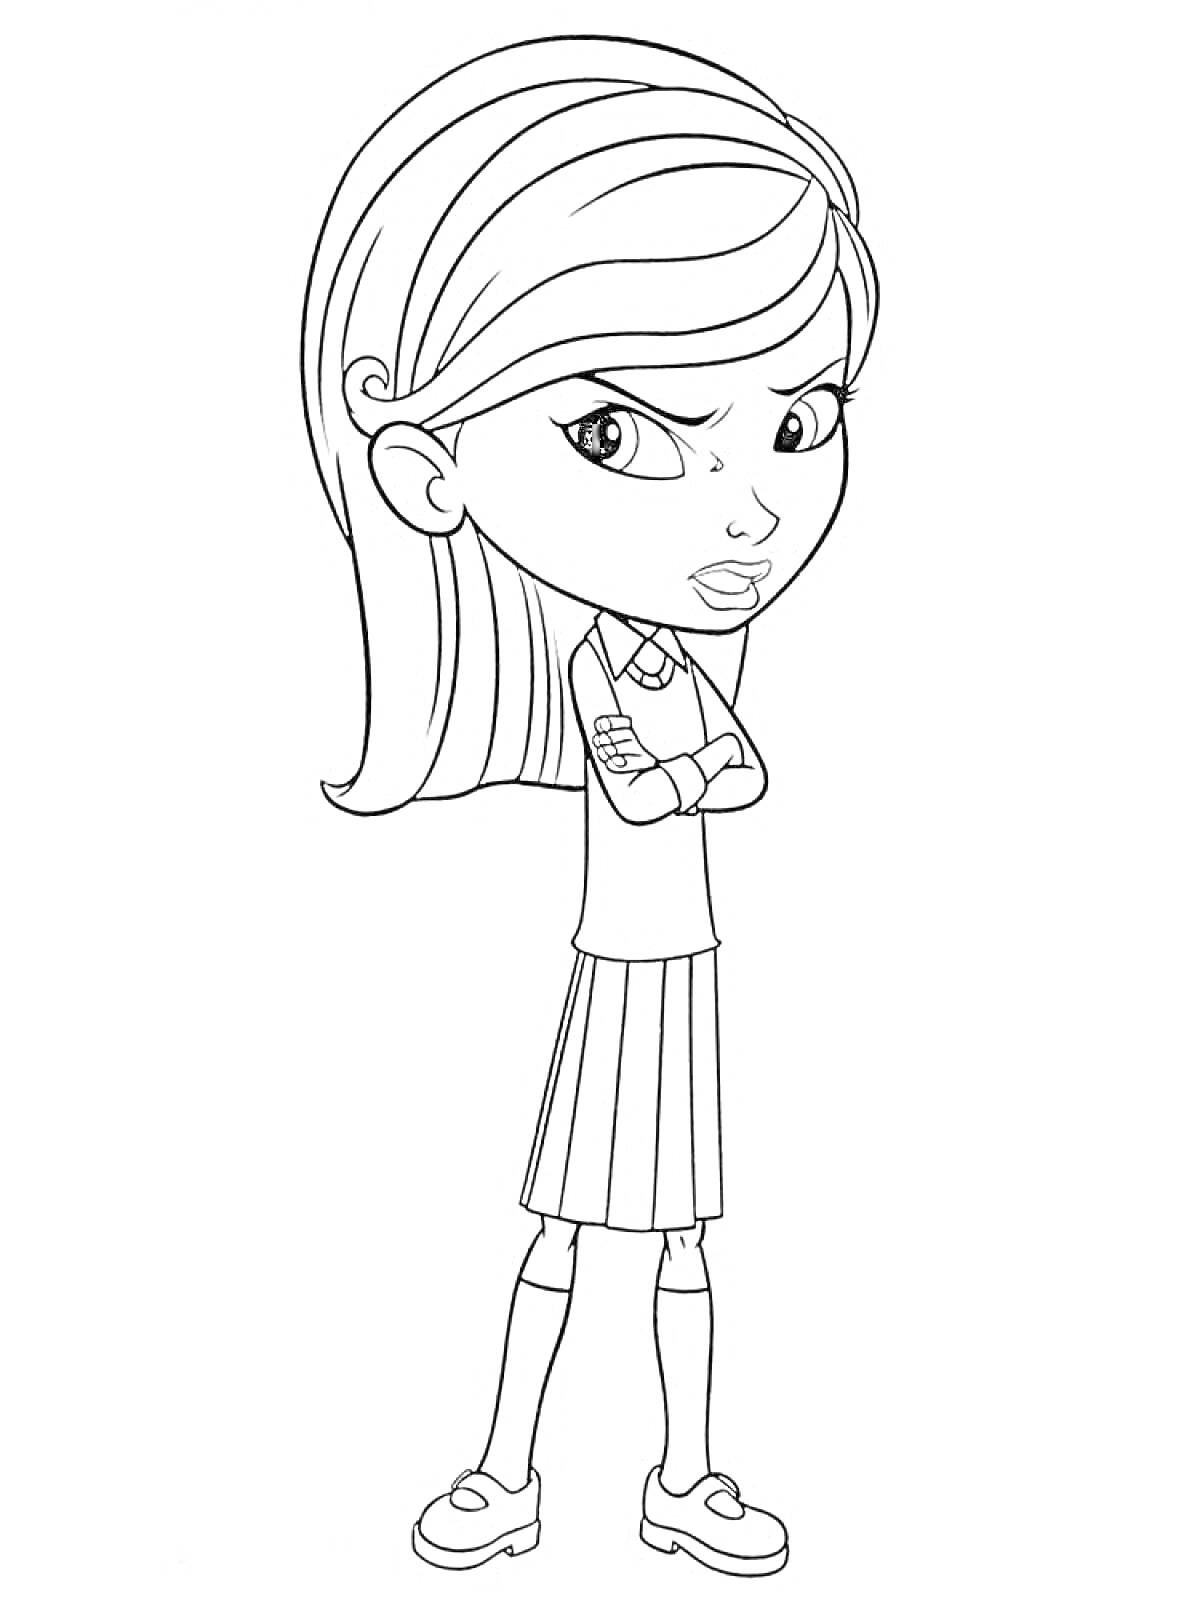 Раскраска Девочка в школьной форме с недовольным выражением лица